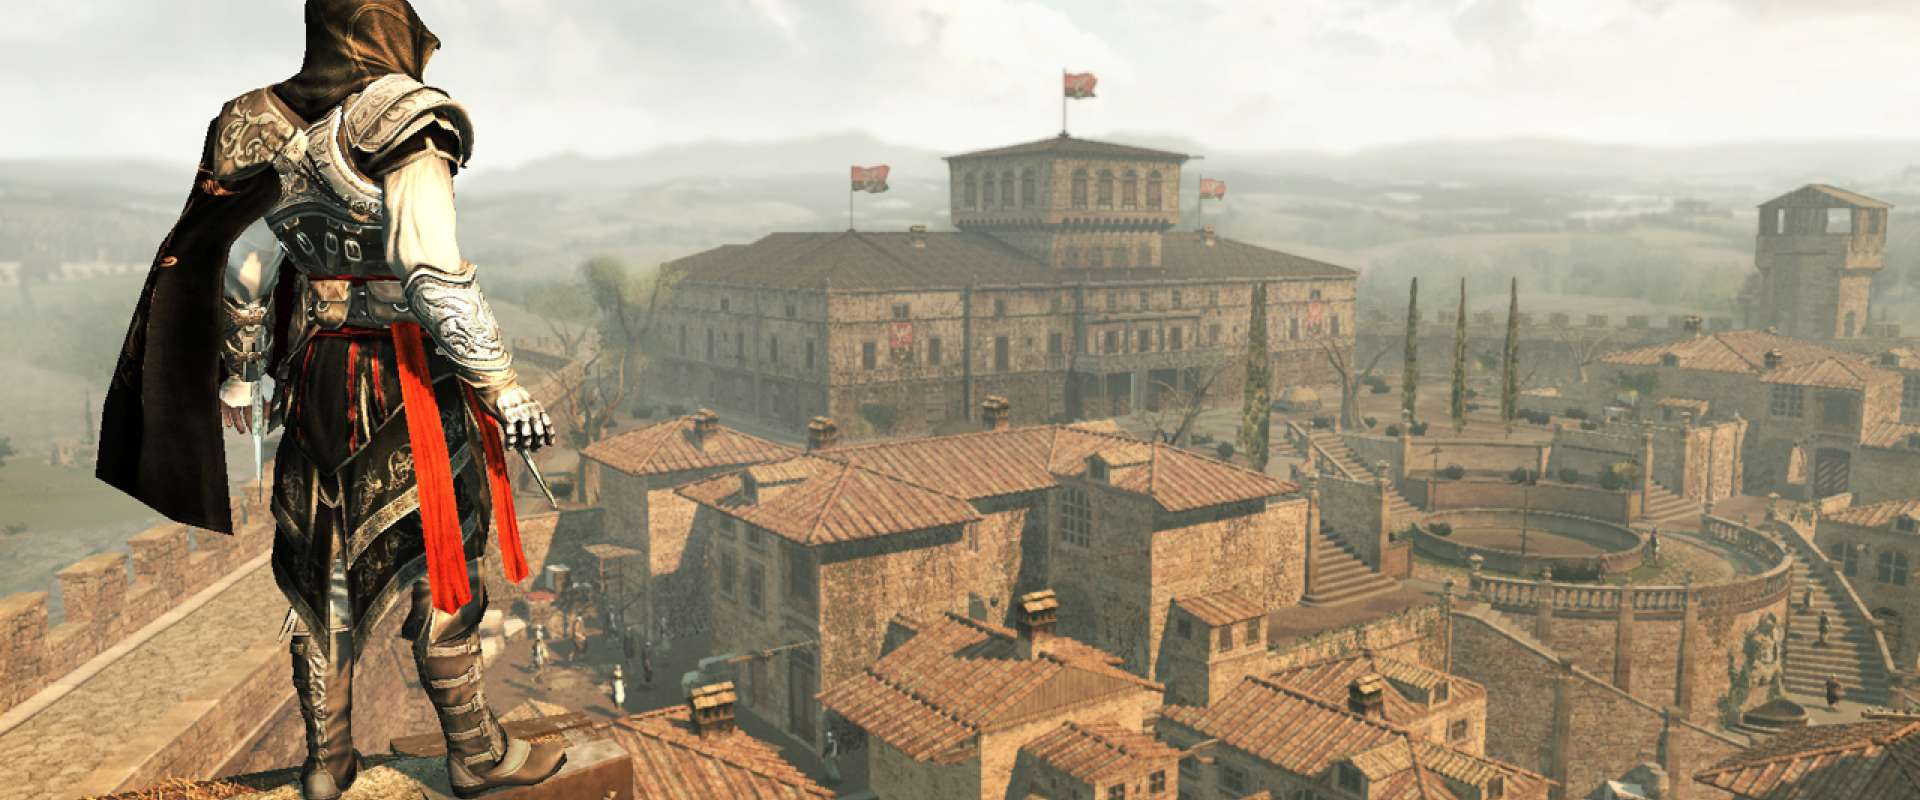 Tradução do Assassin's Creed 2 Download